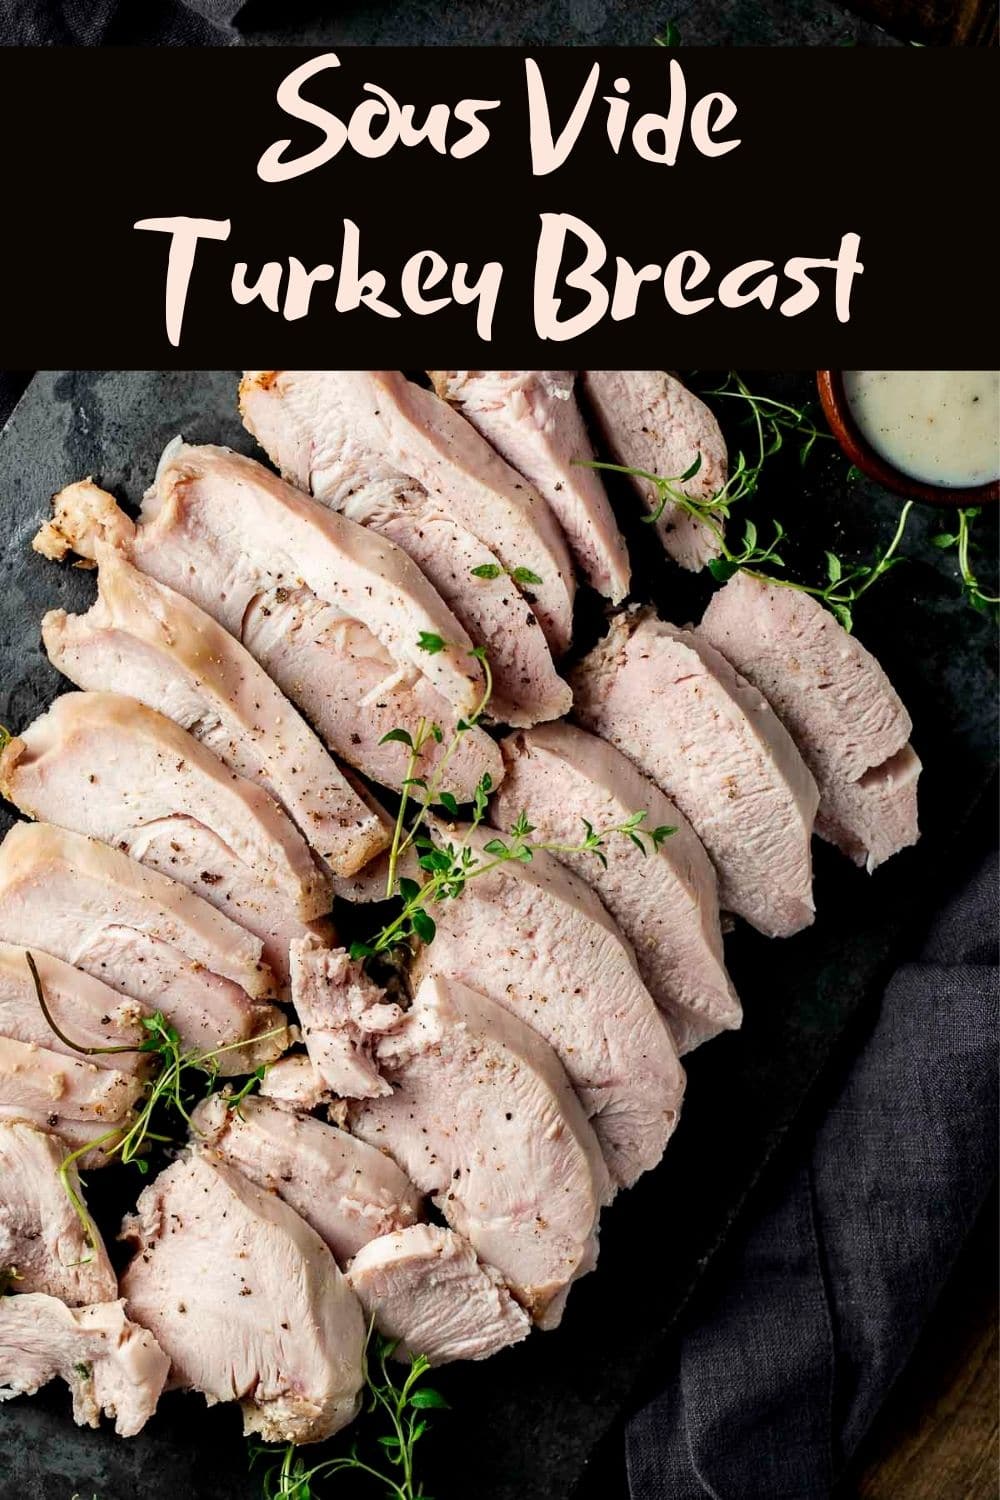 Sous Vide Turkey Breast